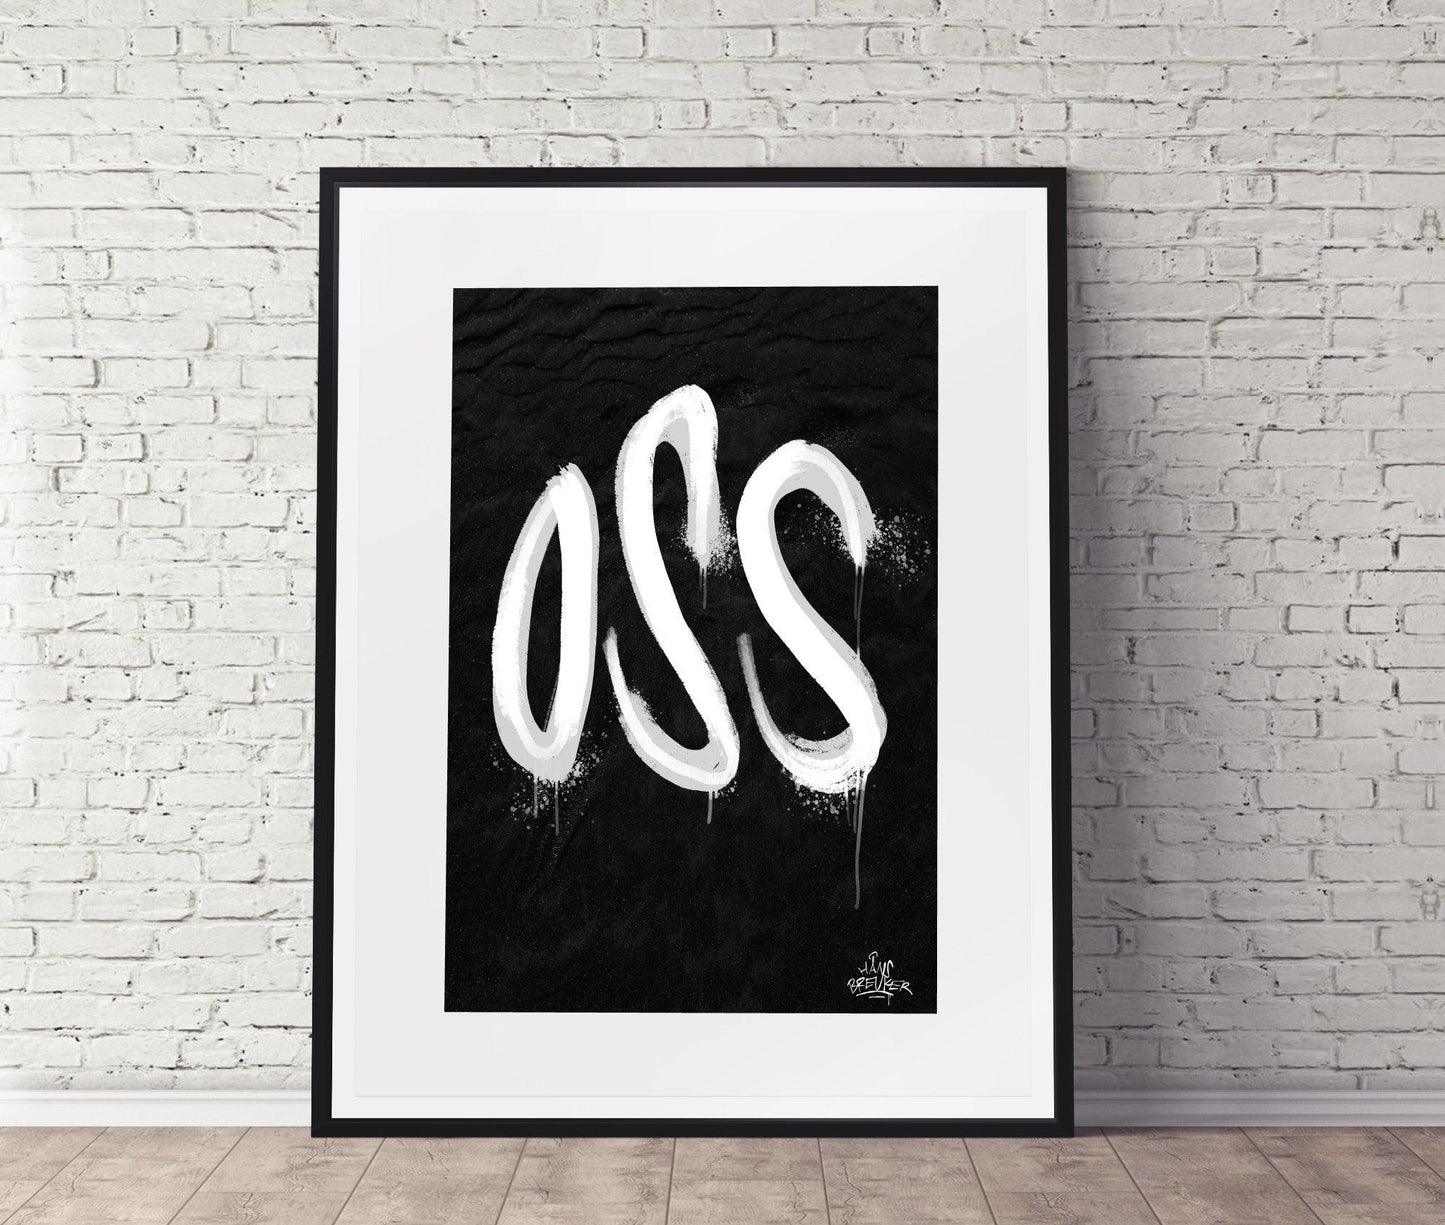 Kalligrafie Poster Oss - Hans Breuker